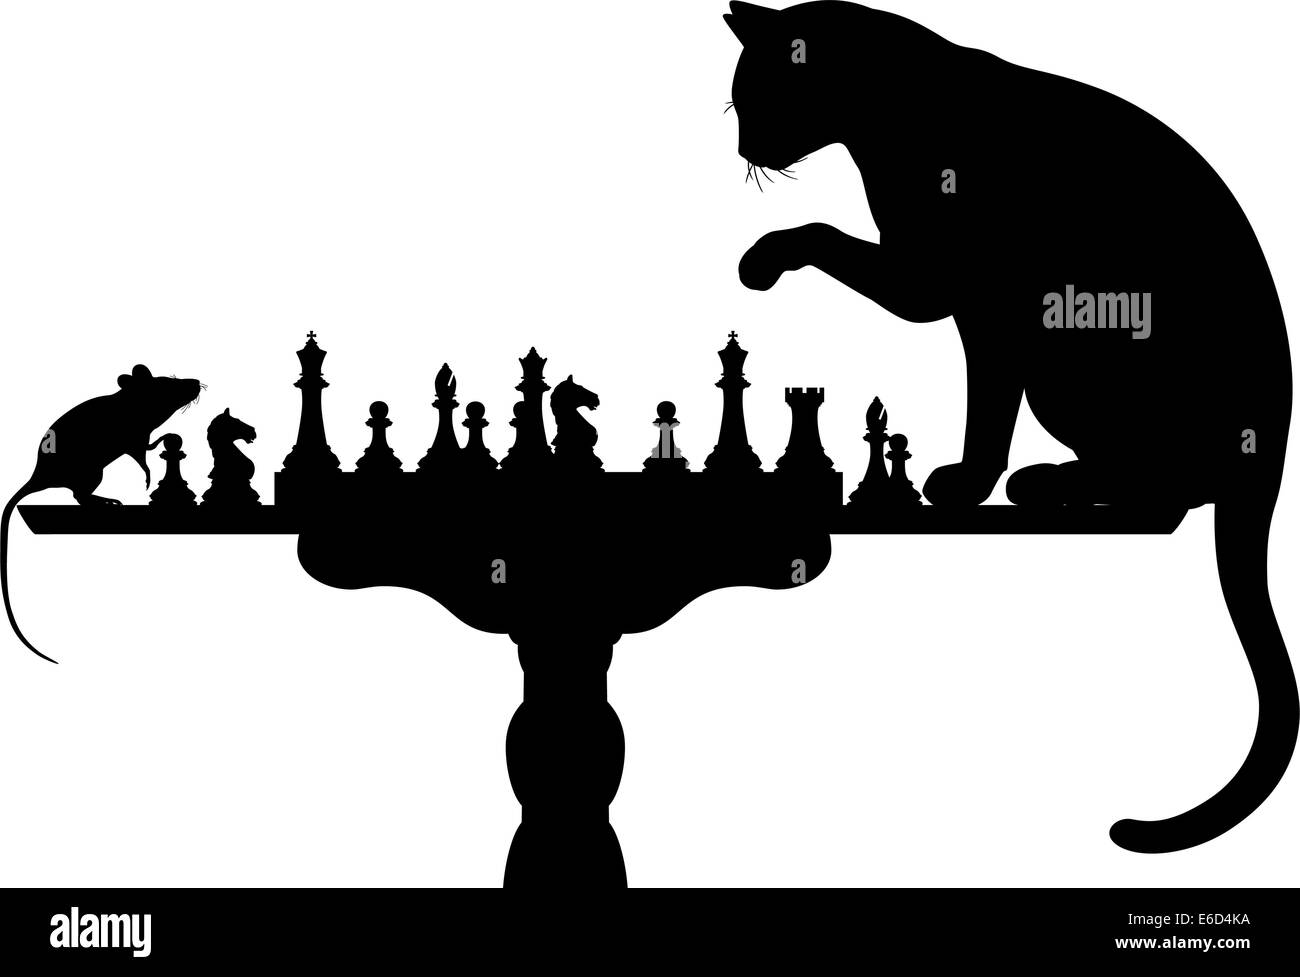 Editierbare Vector Silhouetten von einem Katz und Maus spielen Schach mit allen Elementen als separate Objekte Stock Vektor